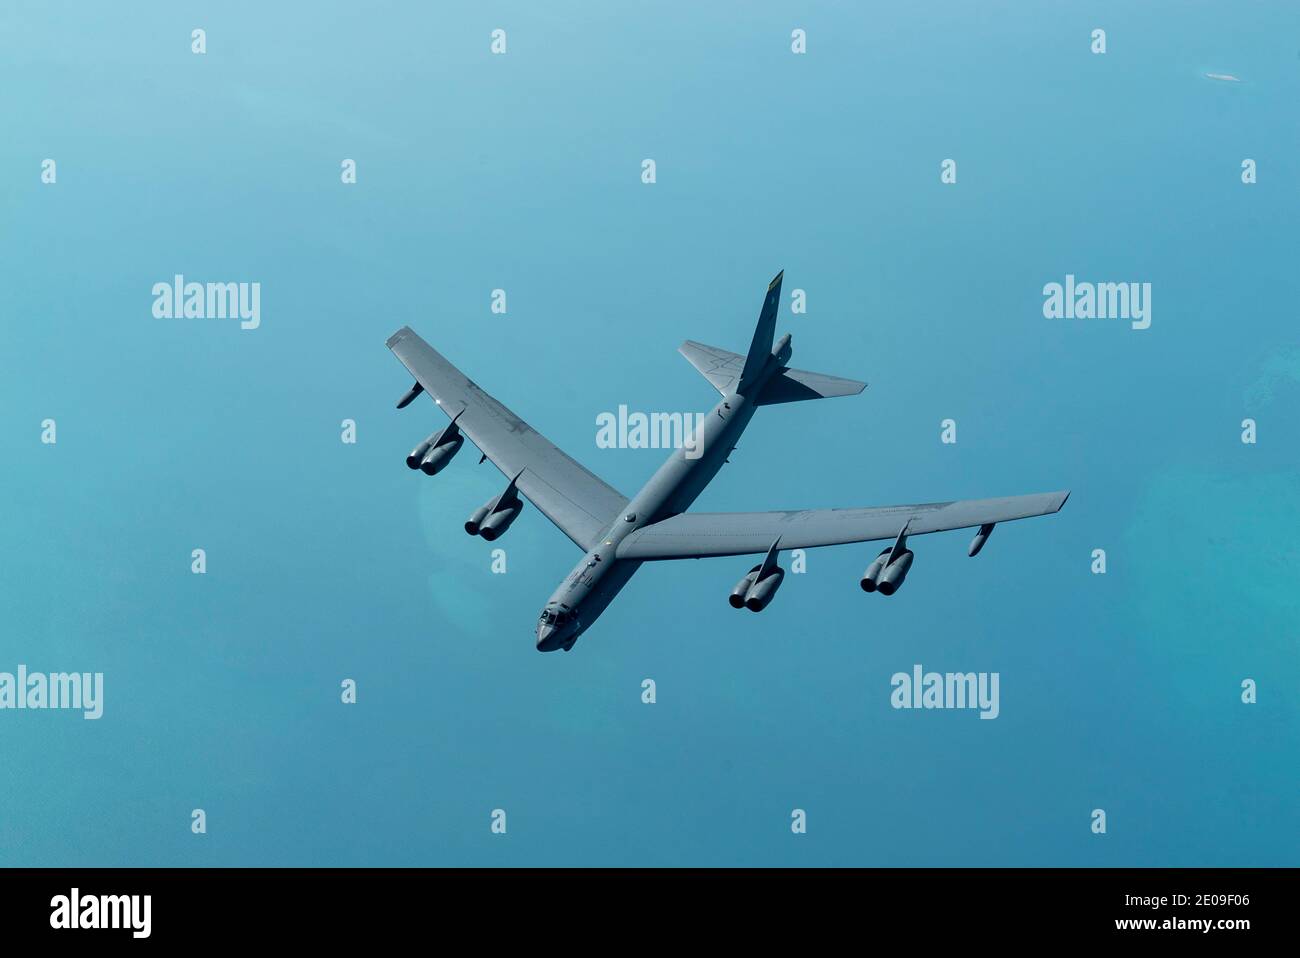 Golfe persique, États-Unis. 30 décembre 2020. Un bombardier stratégique B-52 de la Force aérienne des États-Unis, Stratofortress, de la 5e Escadre Bomb, approche d'un KC-135 Stratotanker pour le ravitaillement en carburant le 30 décembre 2020 au-dessus du golfe Persique. Le bombardier est la troisième mission de démonstration de force de ce type en tant que message à l'Iran. Credit: Planetpix/Alamy Live News Banque D'Images